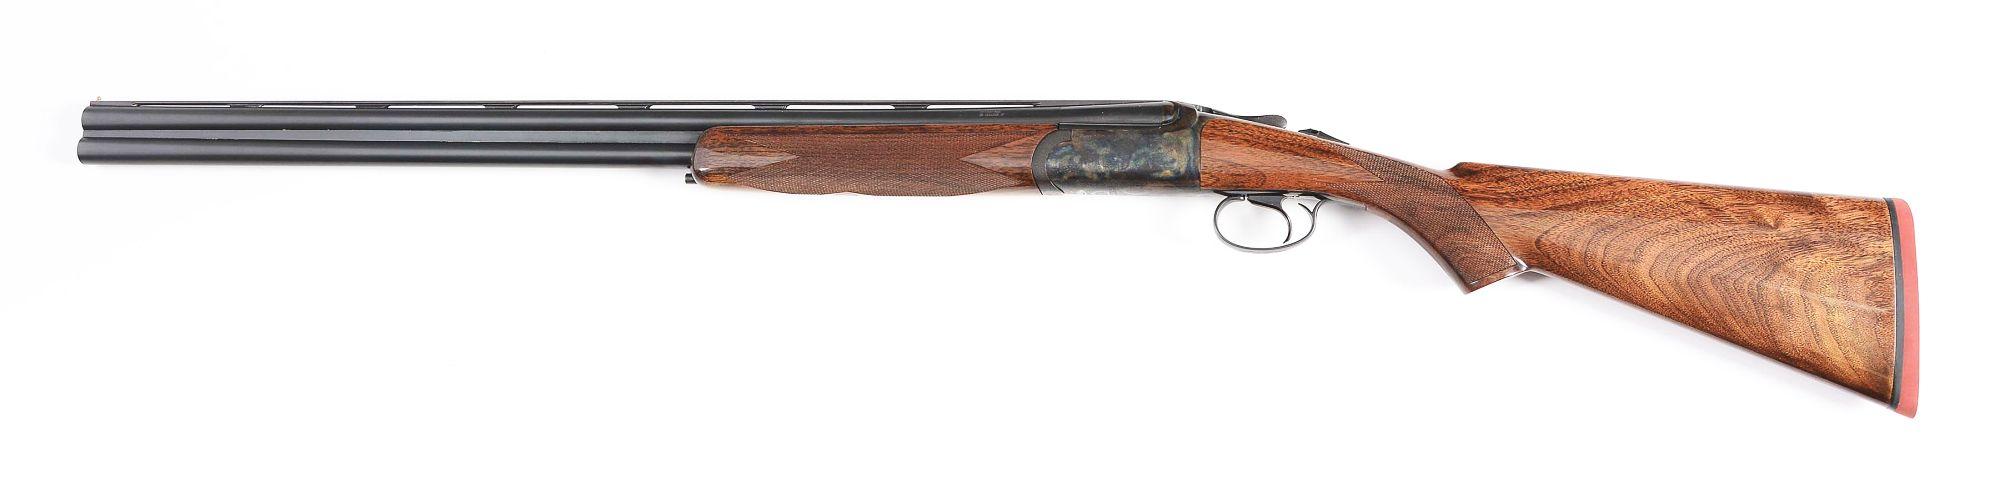 (M) 20 Gauge Inverness Round Bodied OU Game Gun by Connecticut Shotgun Mfg. Co.